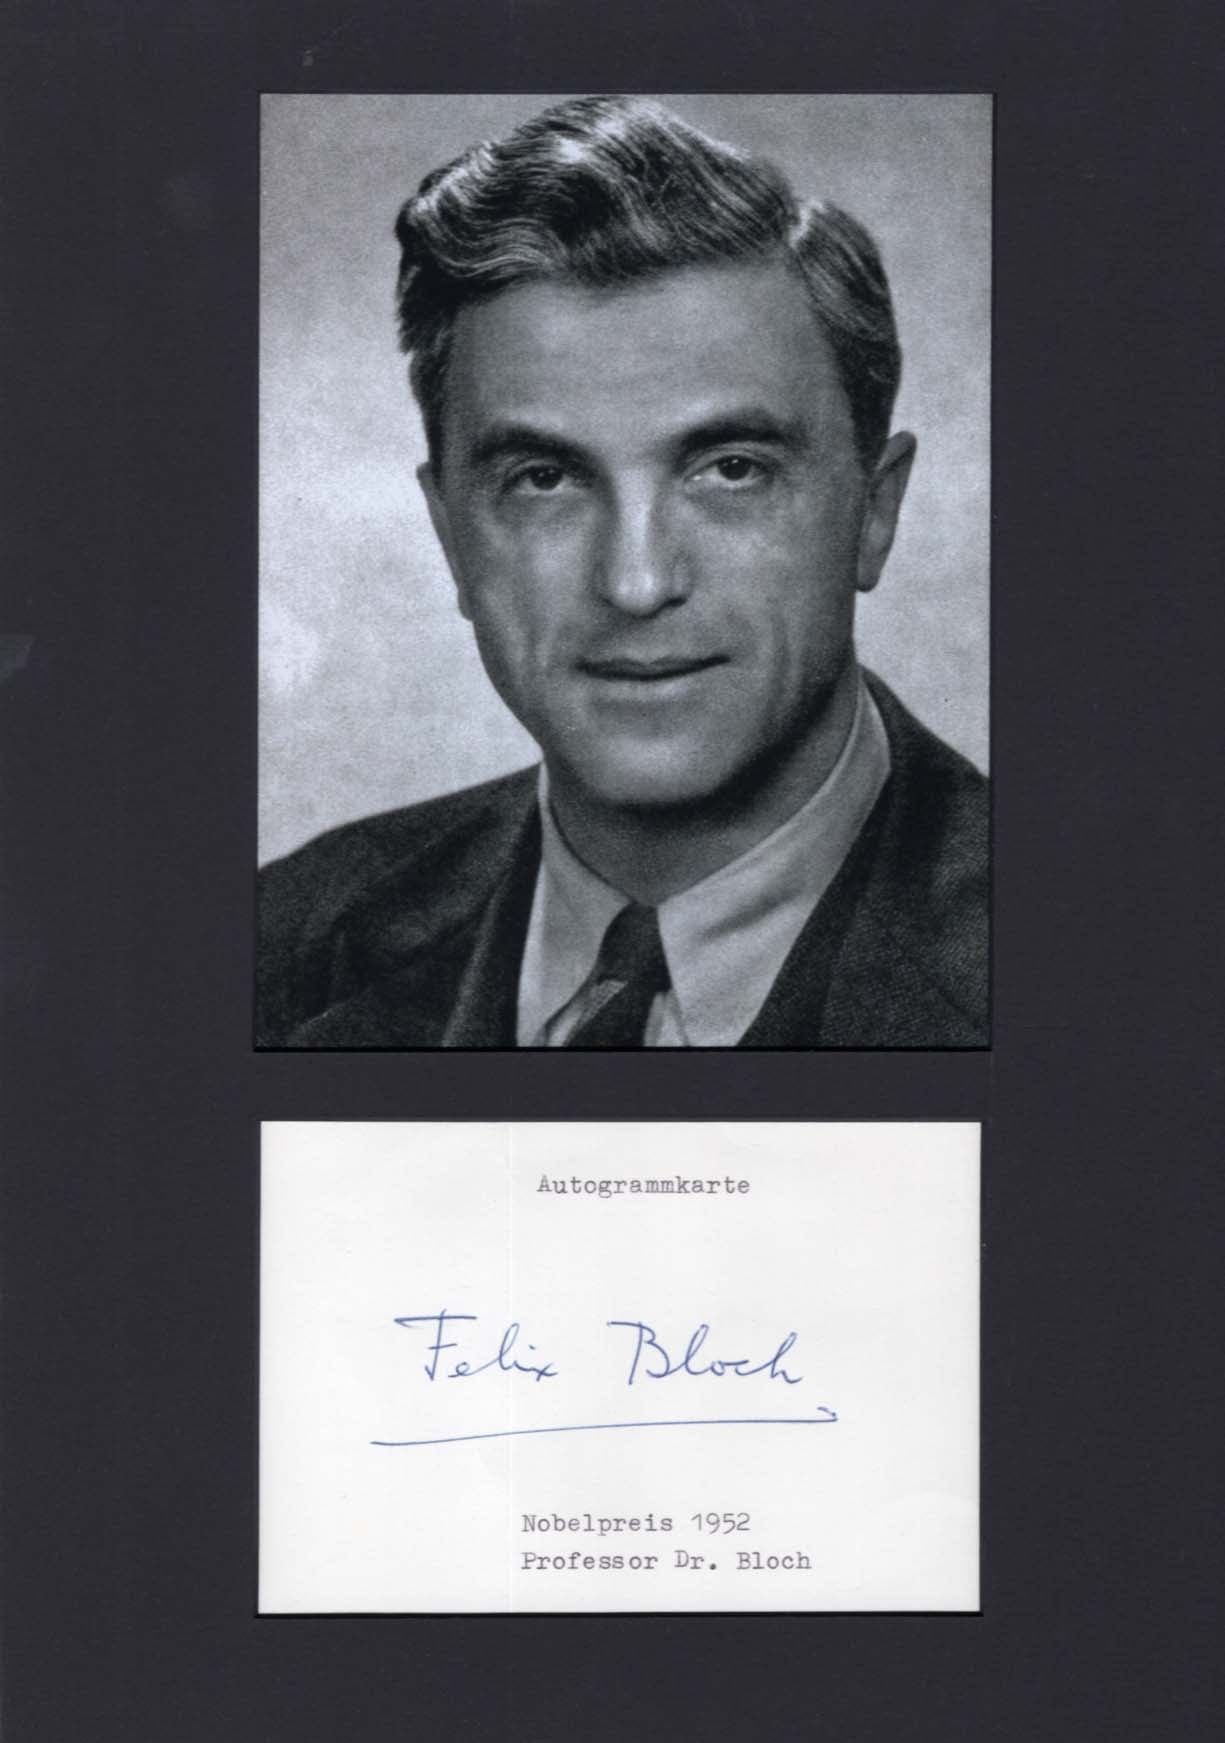 Felix Bloch Autograph Autogramm | ID 7763749634197